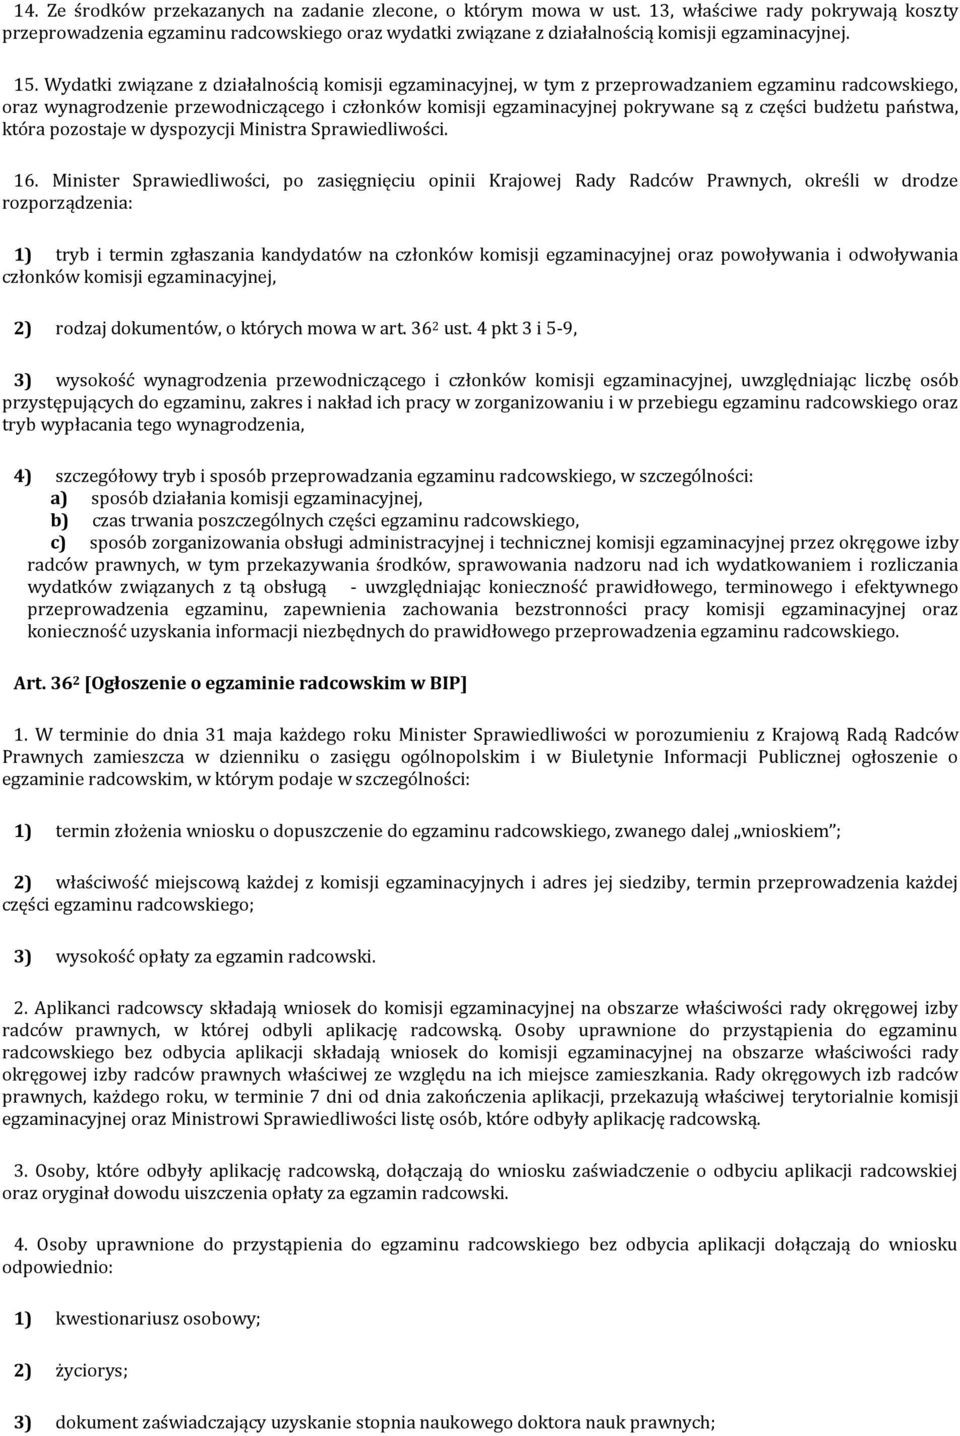 Wydatki związane z działalnością komisji egzaminacyjnej, w tym z przeprowadzaniem egzaminu radcowskiego, oraz wynagrodzenie przewodniczącego i członków komisji egzaminacyjnej pokrywane są z części